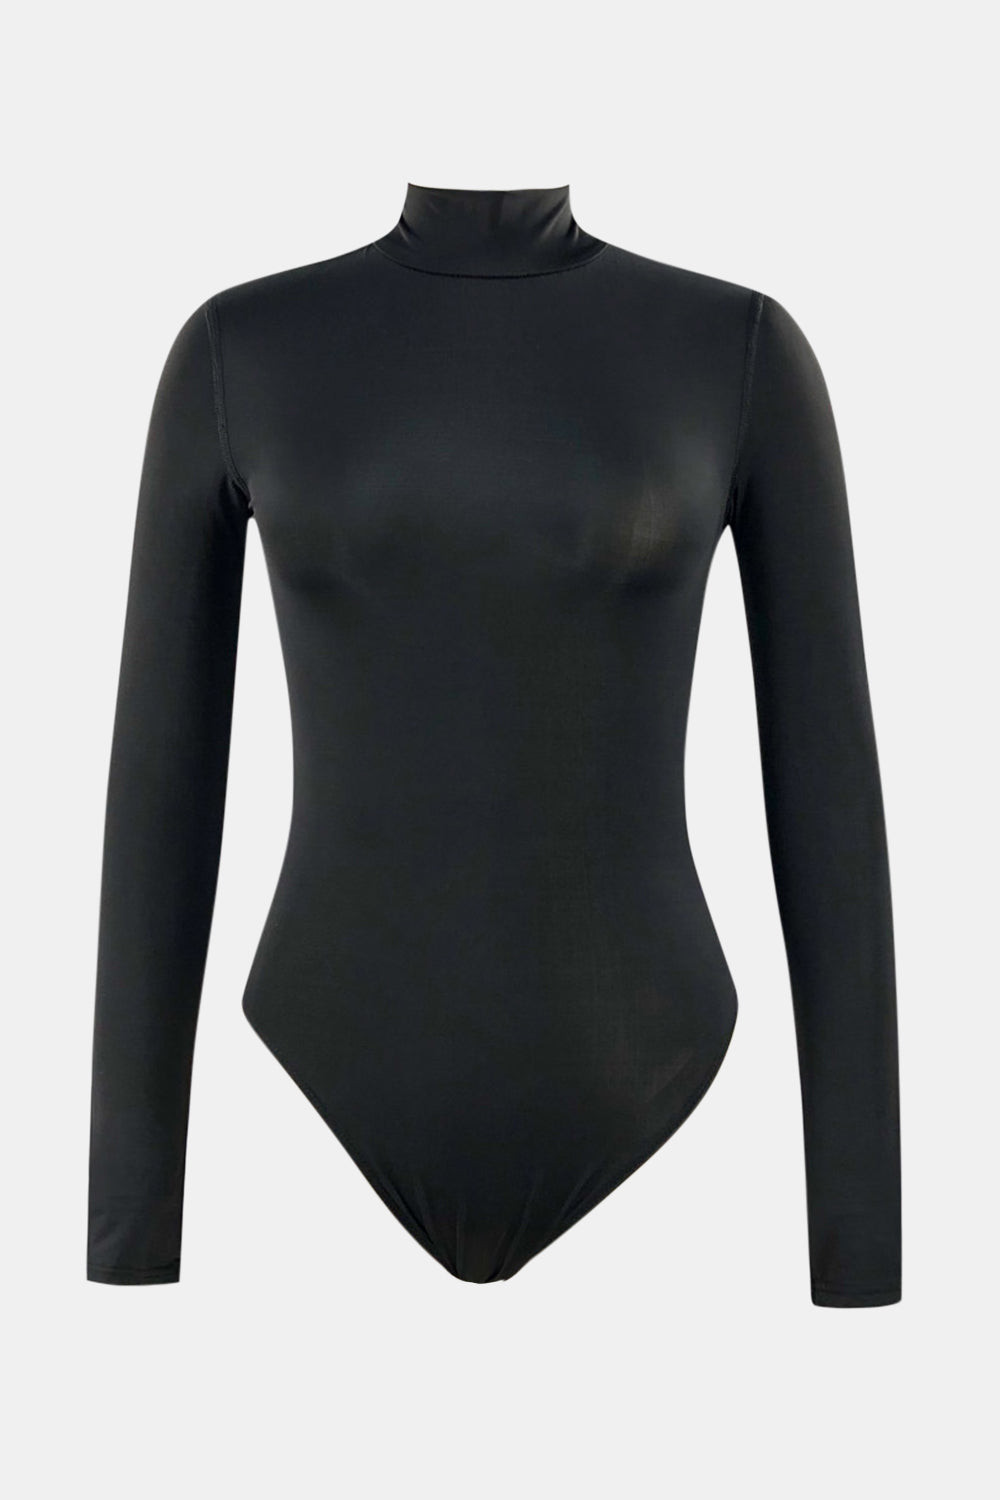 Mock Neck Long Sleeve One-Piece Swimwear - Women’s Clothing & Accessories - Swimwear - 4 - 2024